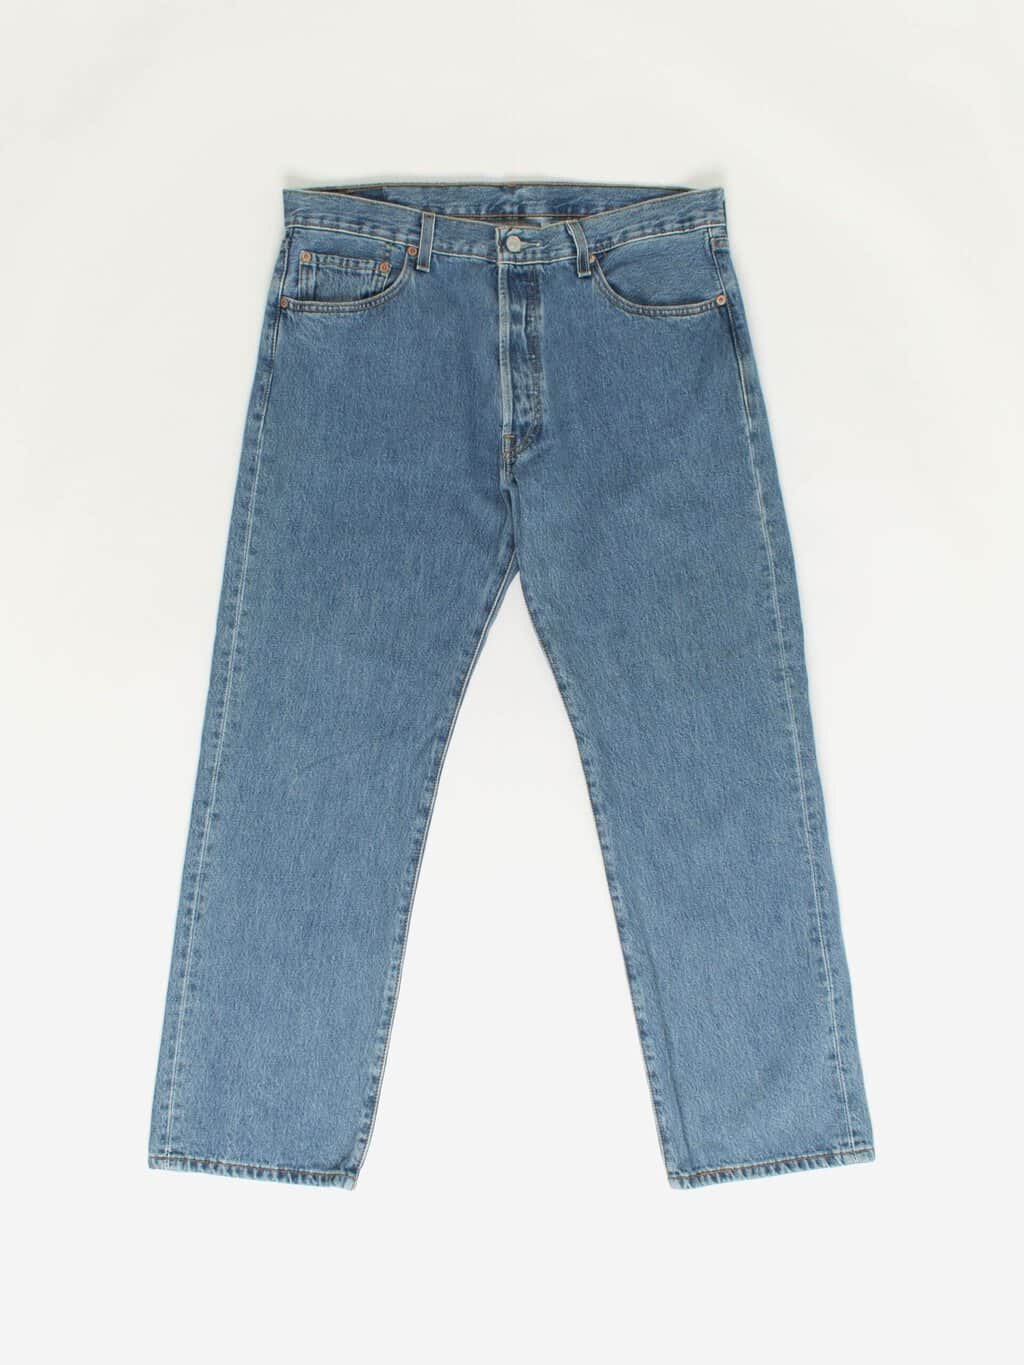 Vintage Levis 501 jeans 35 x 29.5 blue stonewash 90s - Y2K - St Cyr Vintage